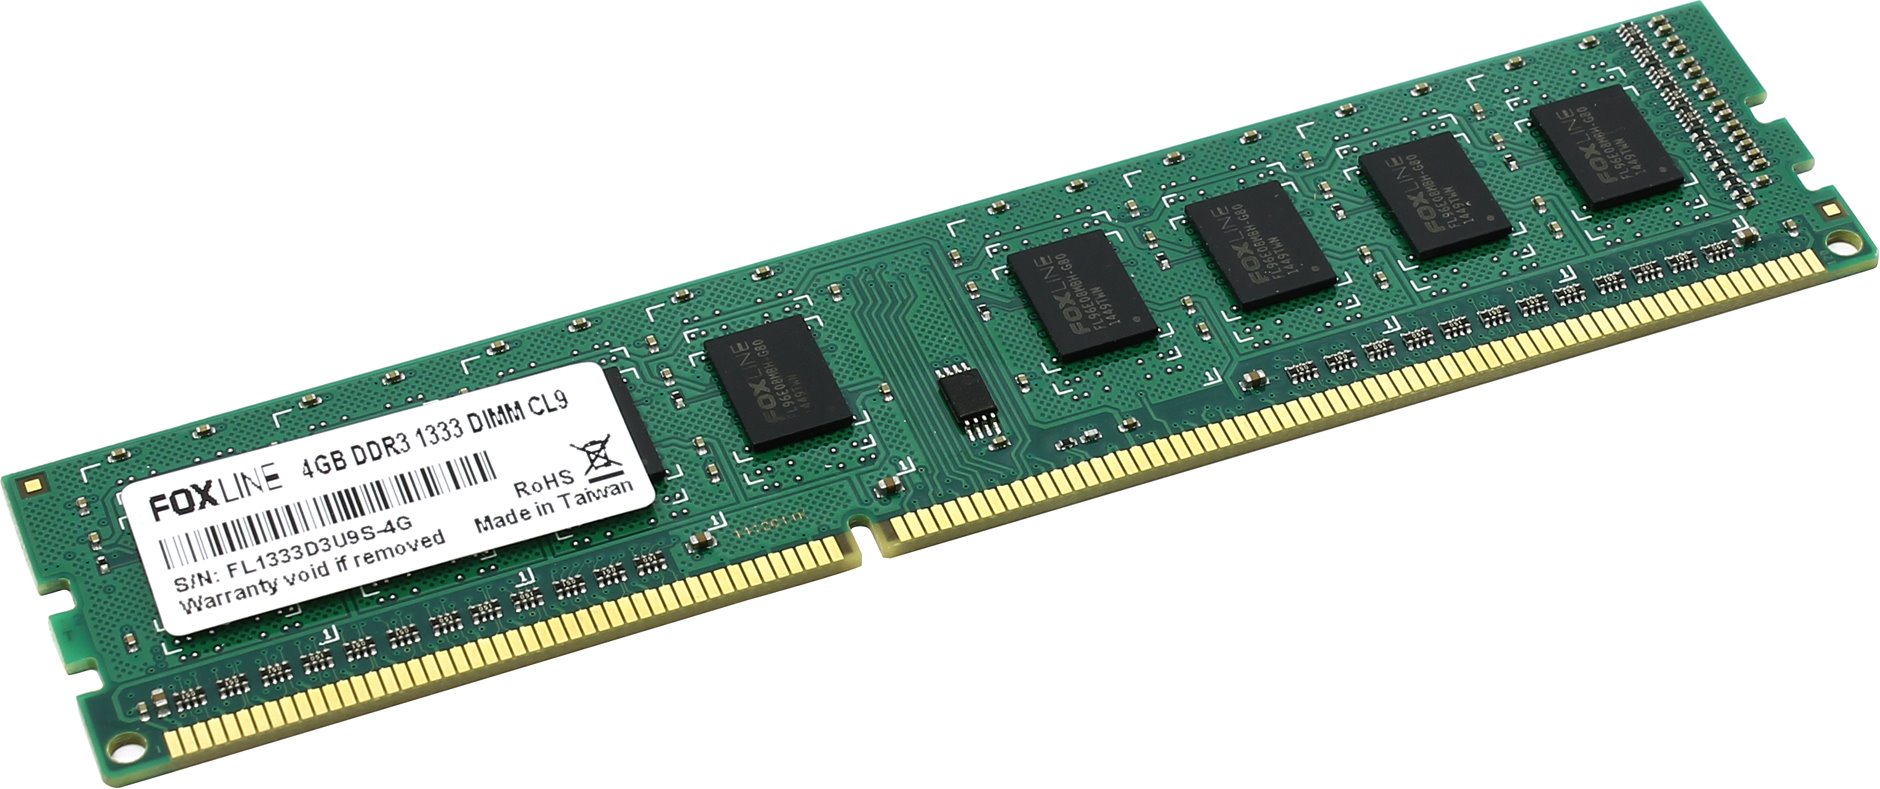 Память оперативная Foxline DIMM 4GB 1600 DDR3 CL11 (512*8) hynix chips, FL1600D3U11S-4GH